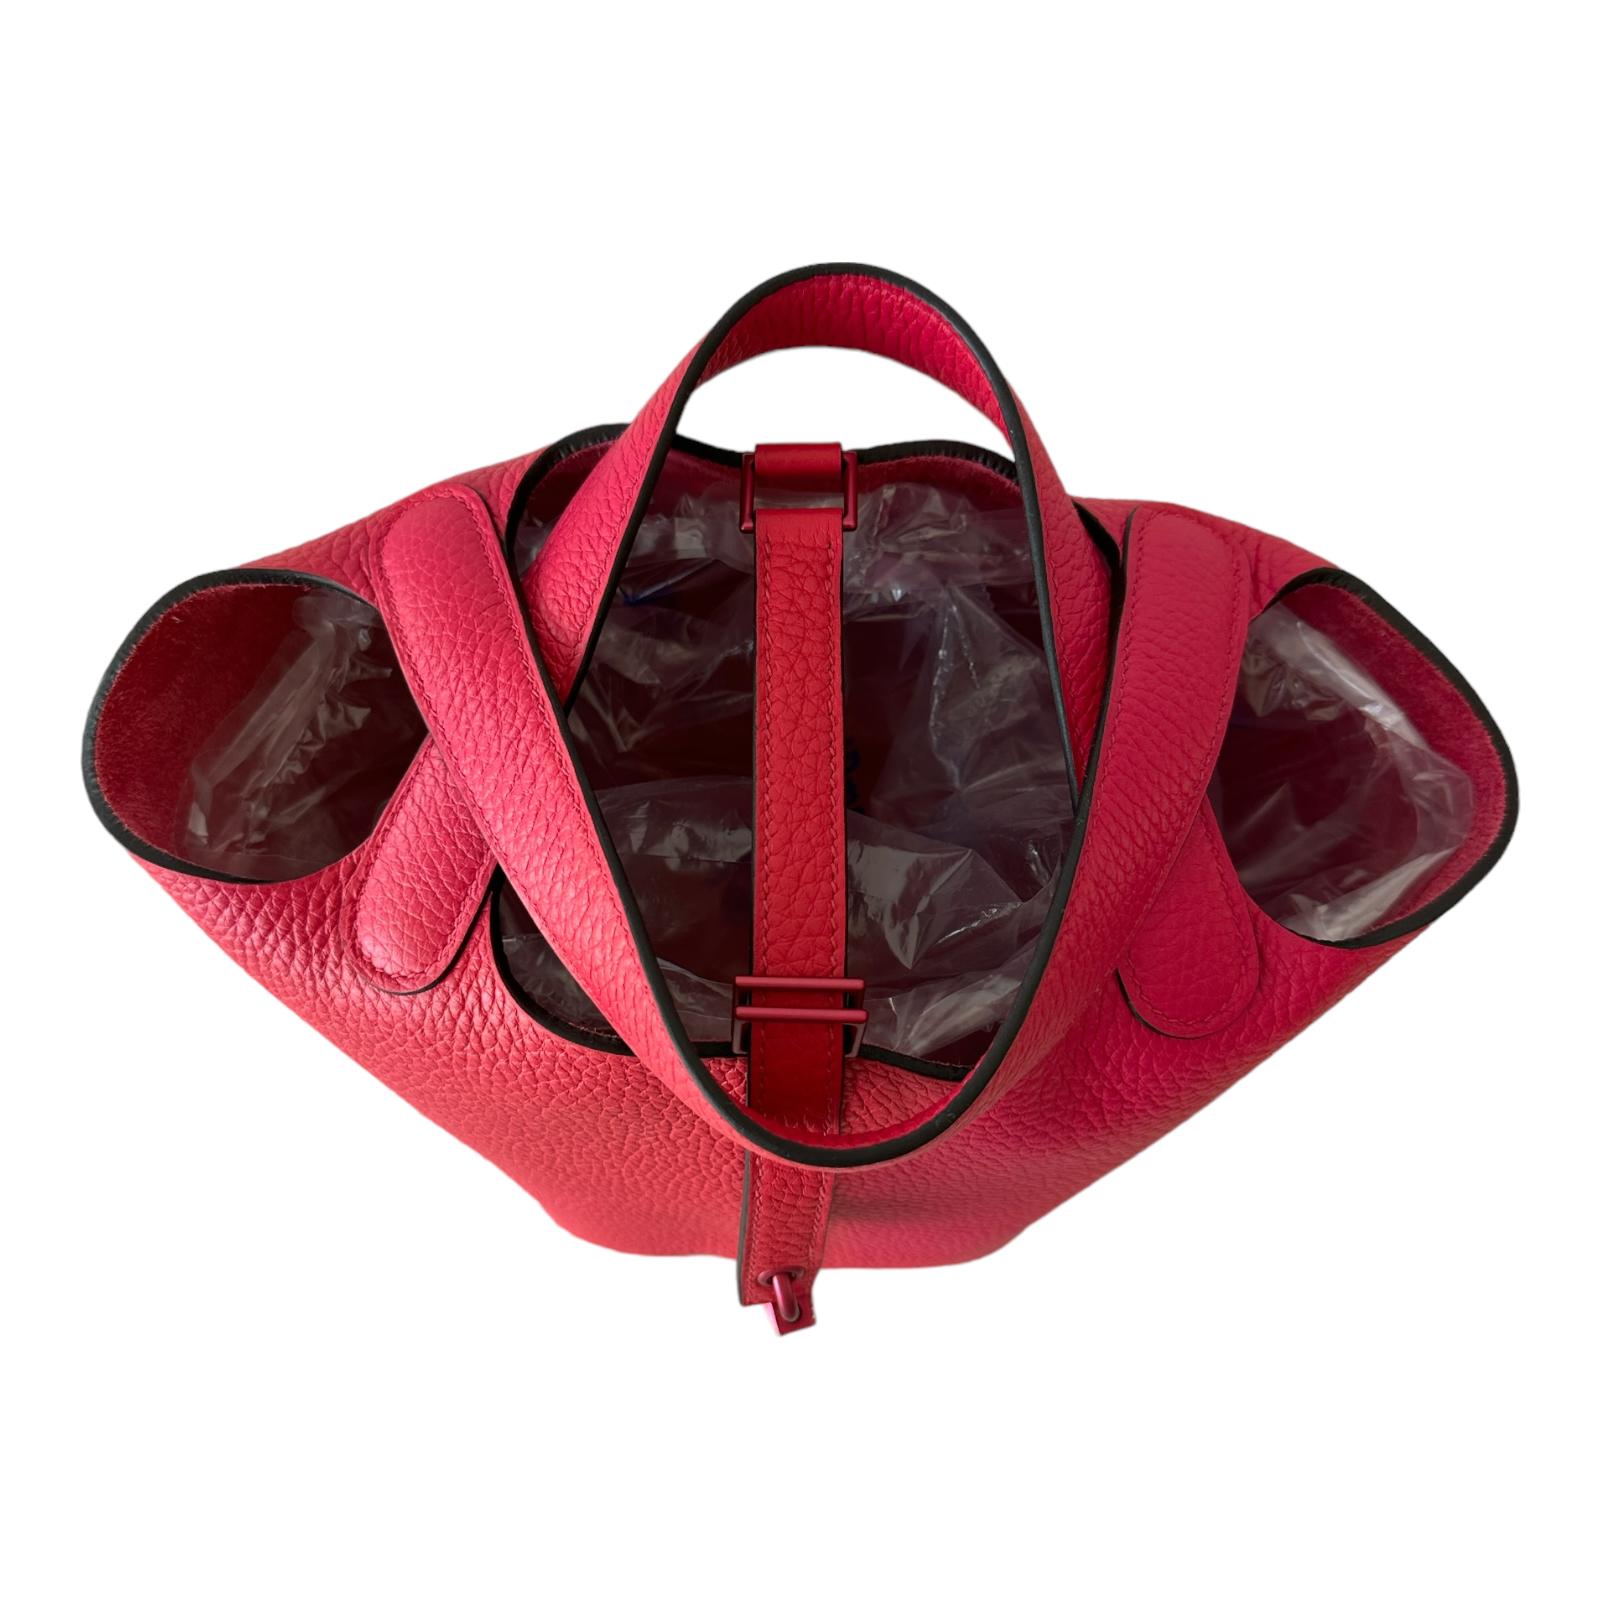 Die Hermès Picotin 18 ist eine kleine Handtasche der französischen Luxusmarke Hermès. Der Name stammt von dem französischen Wort 